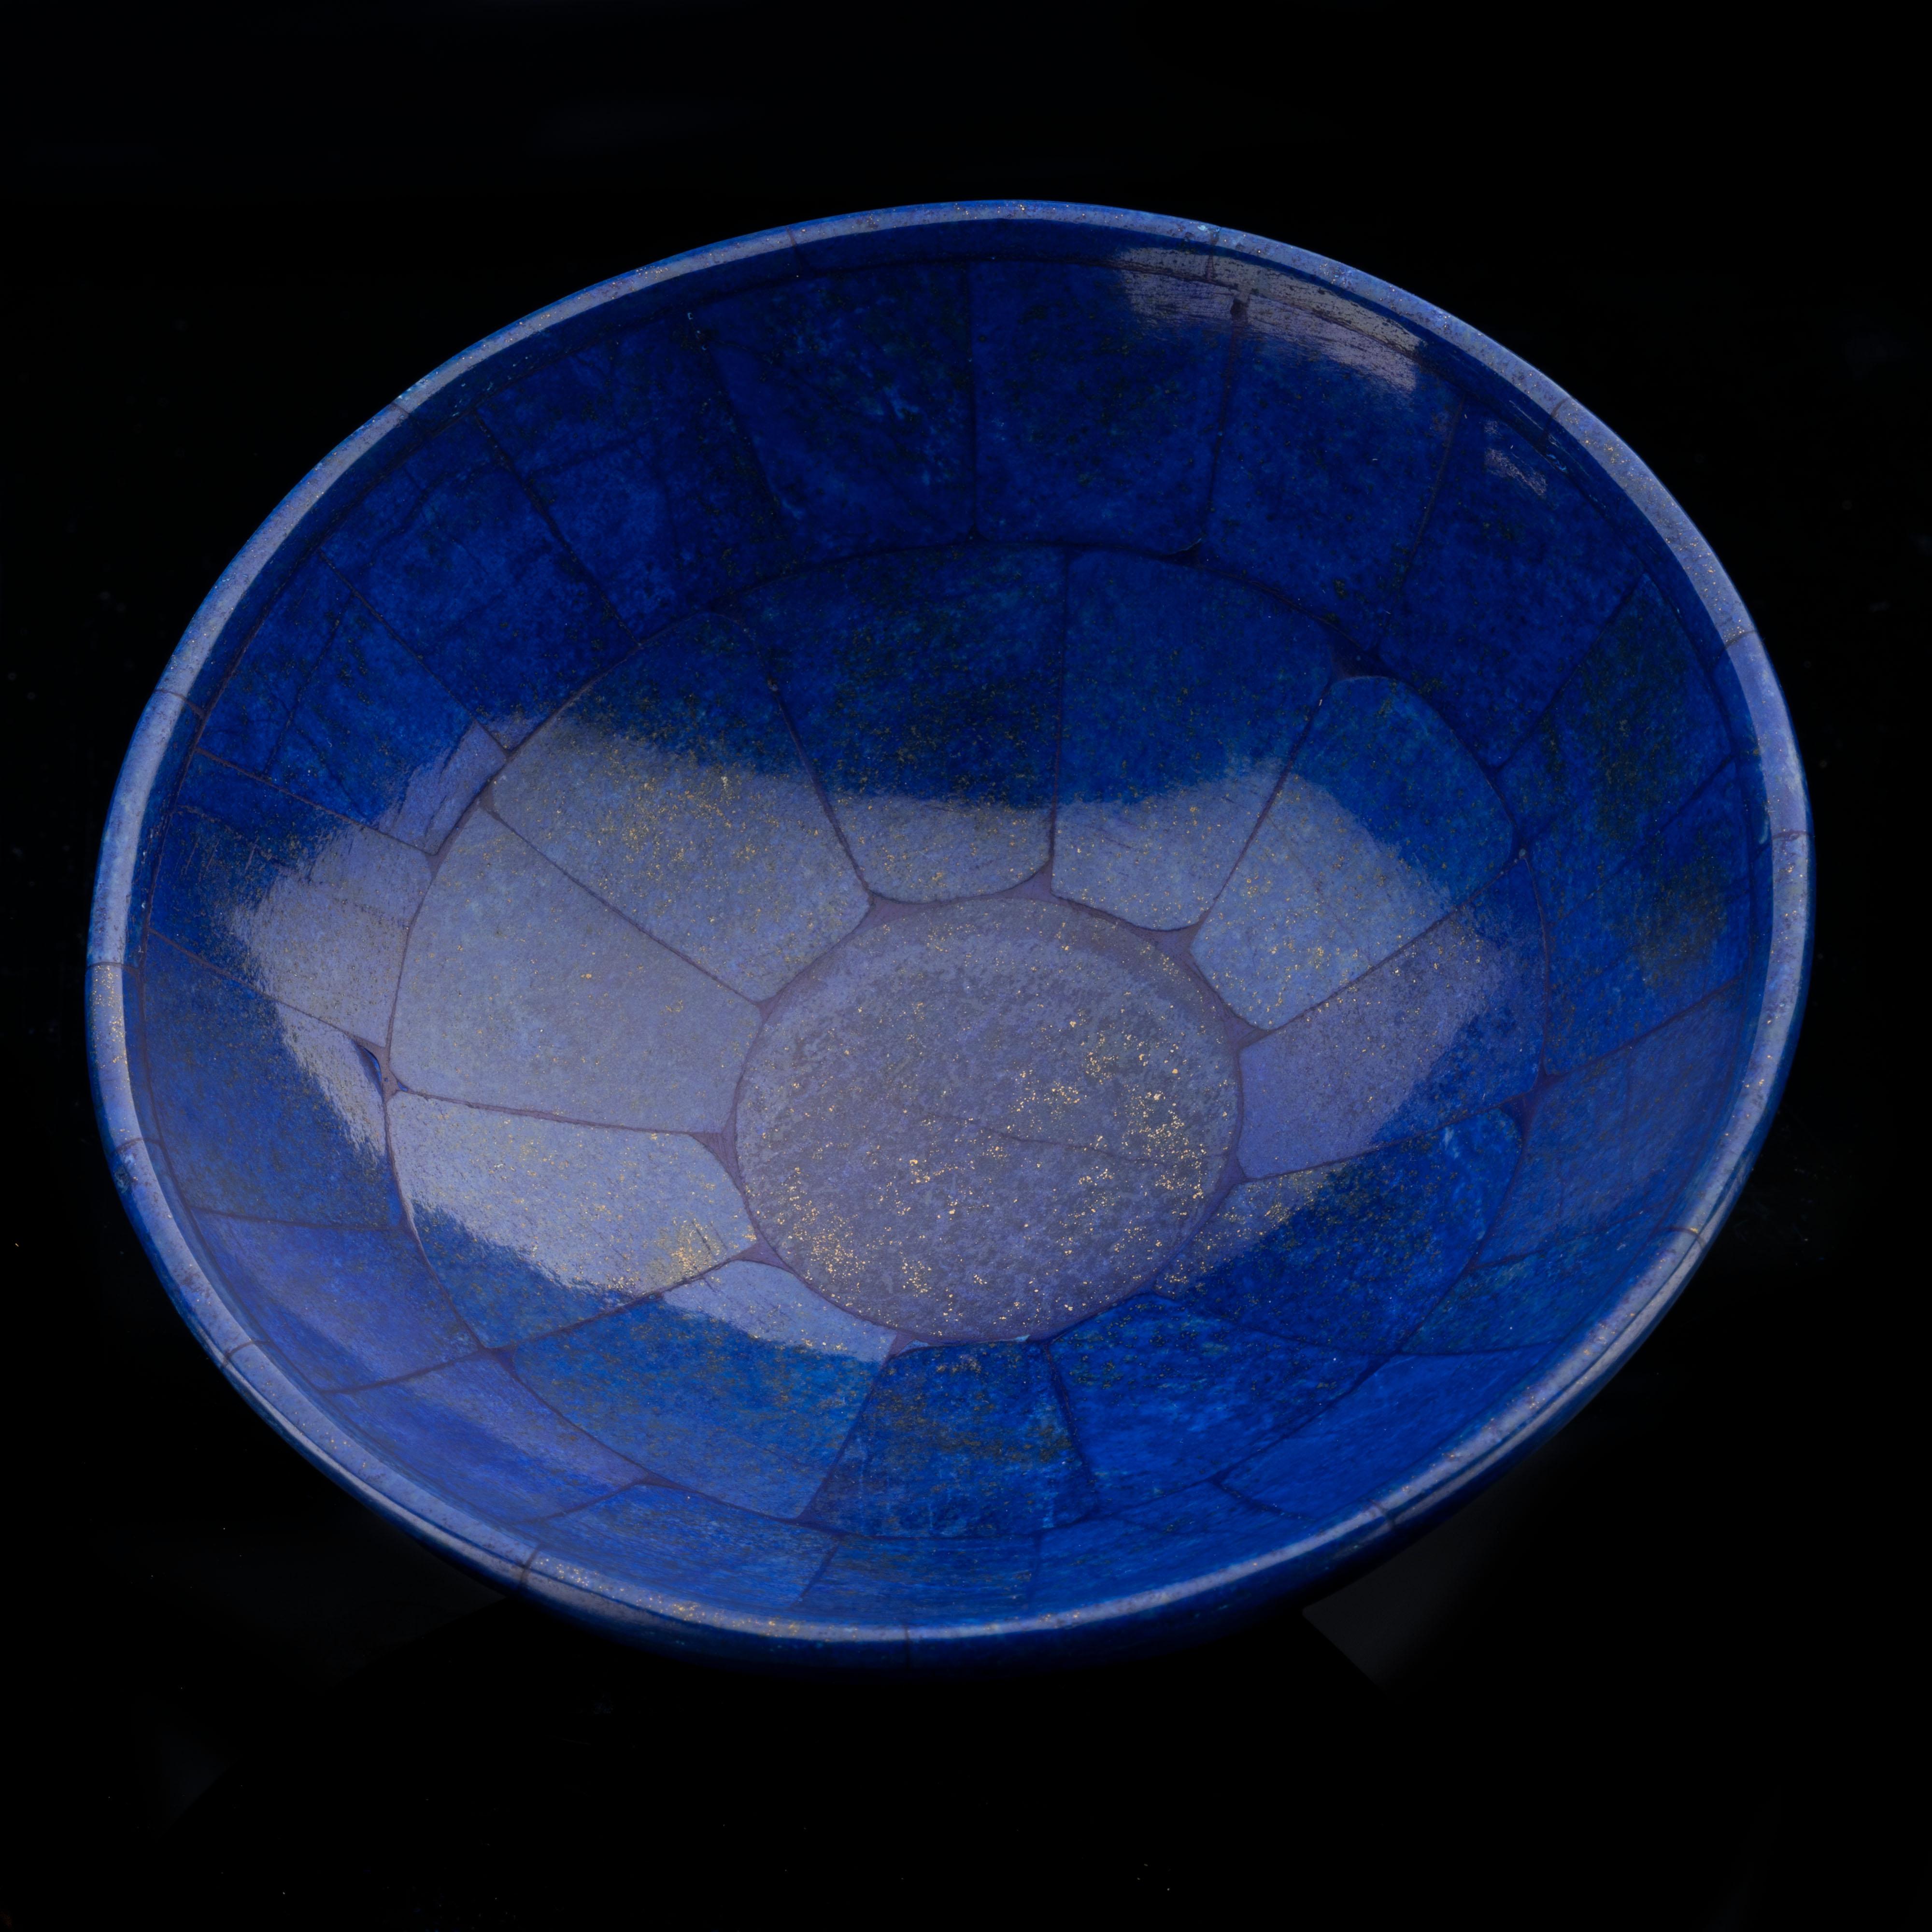 Cette pièce de décoration exceptionnelle fabriquée à partir de lapis-lazuli de haute qualité a été coupée, assemblée et polie à la main pour former un magnifique bol. Ce spécimen artisanal affiche une luxueuse teinte bleue mise en valeur par l'éclat